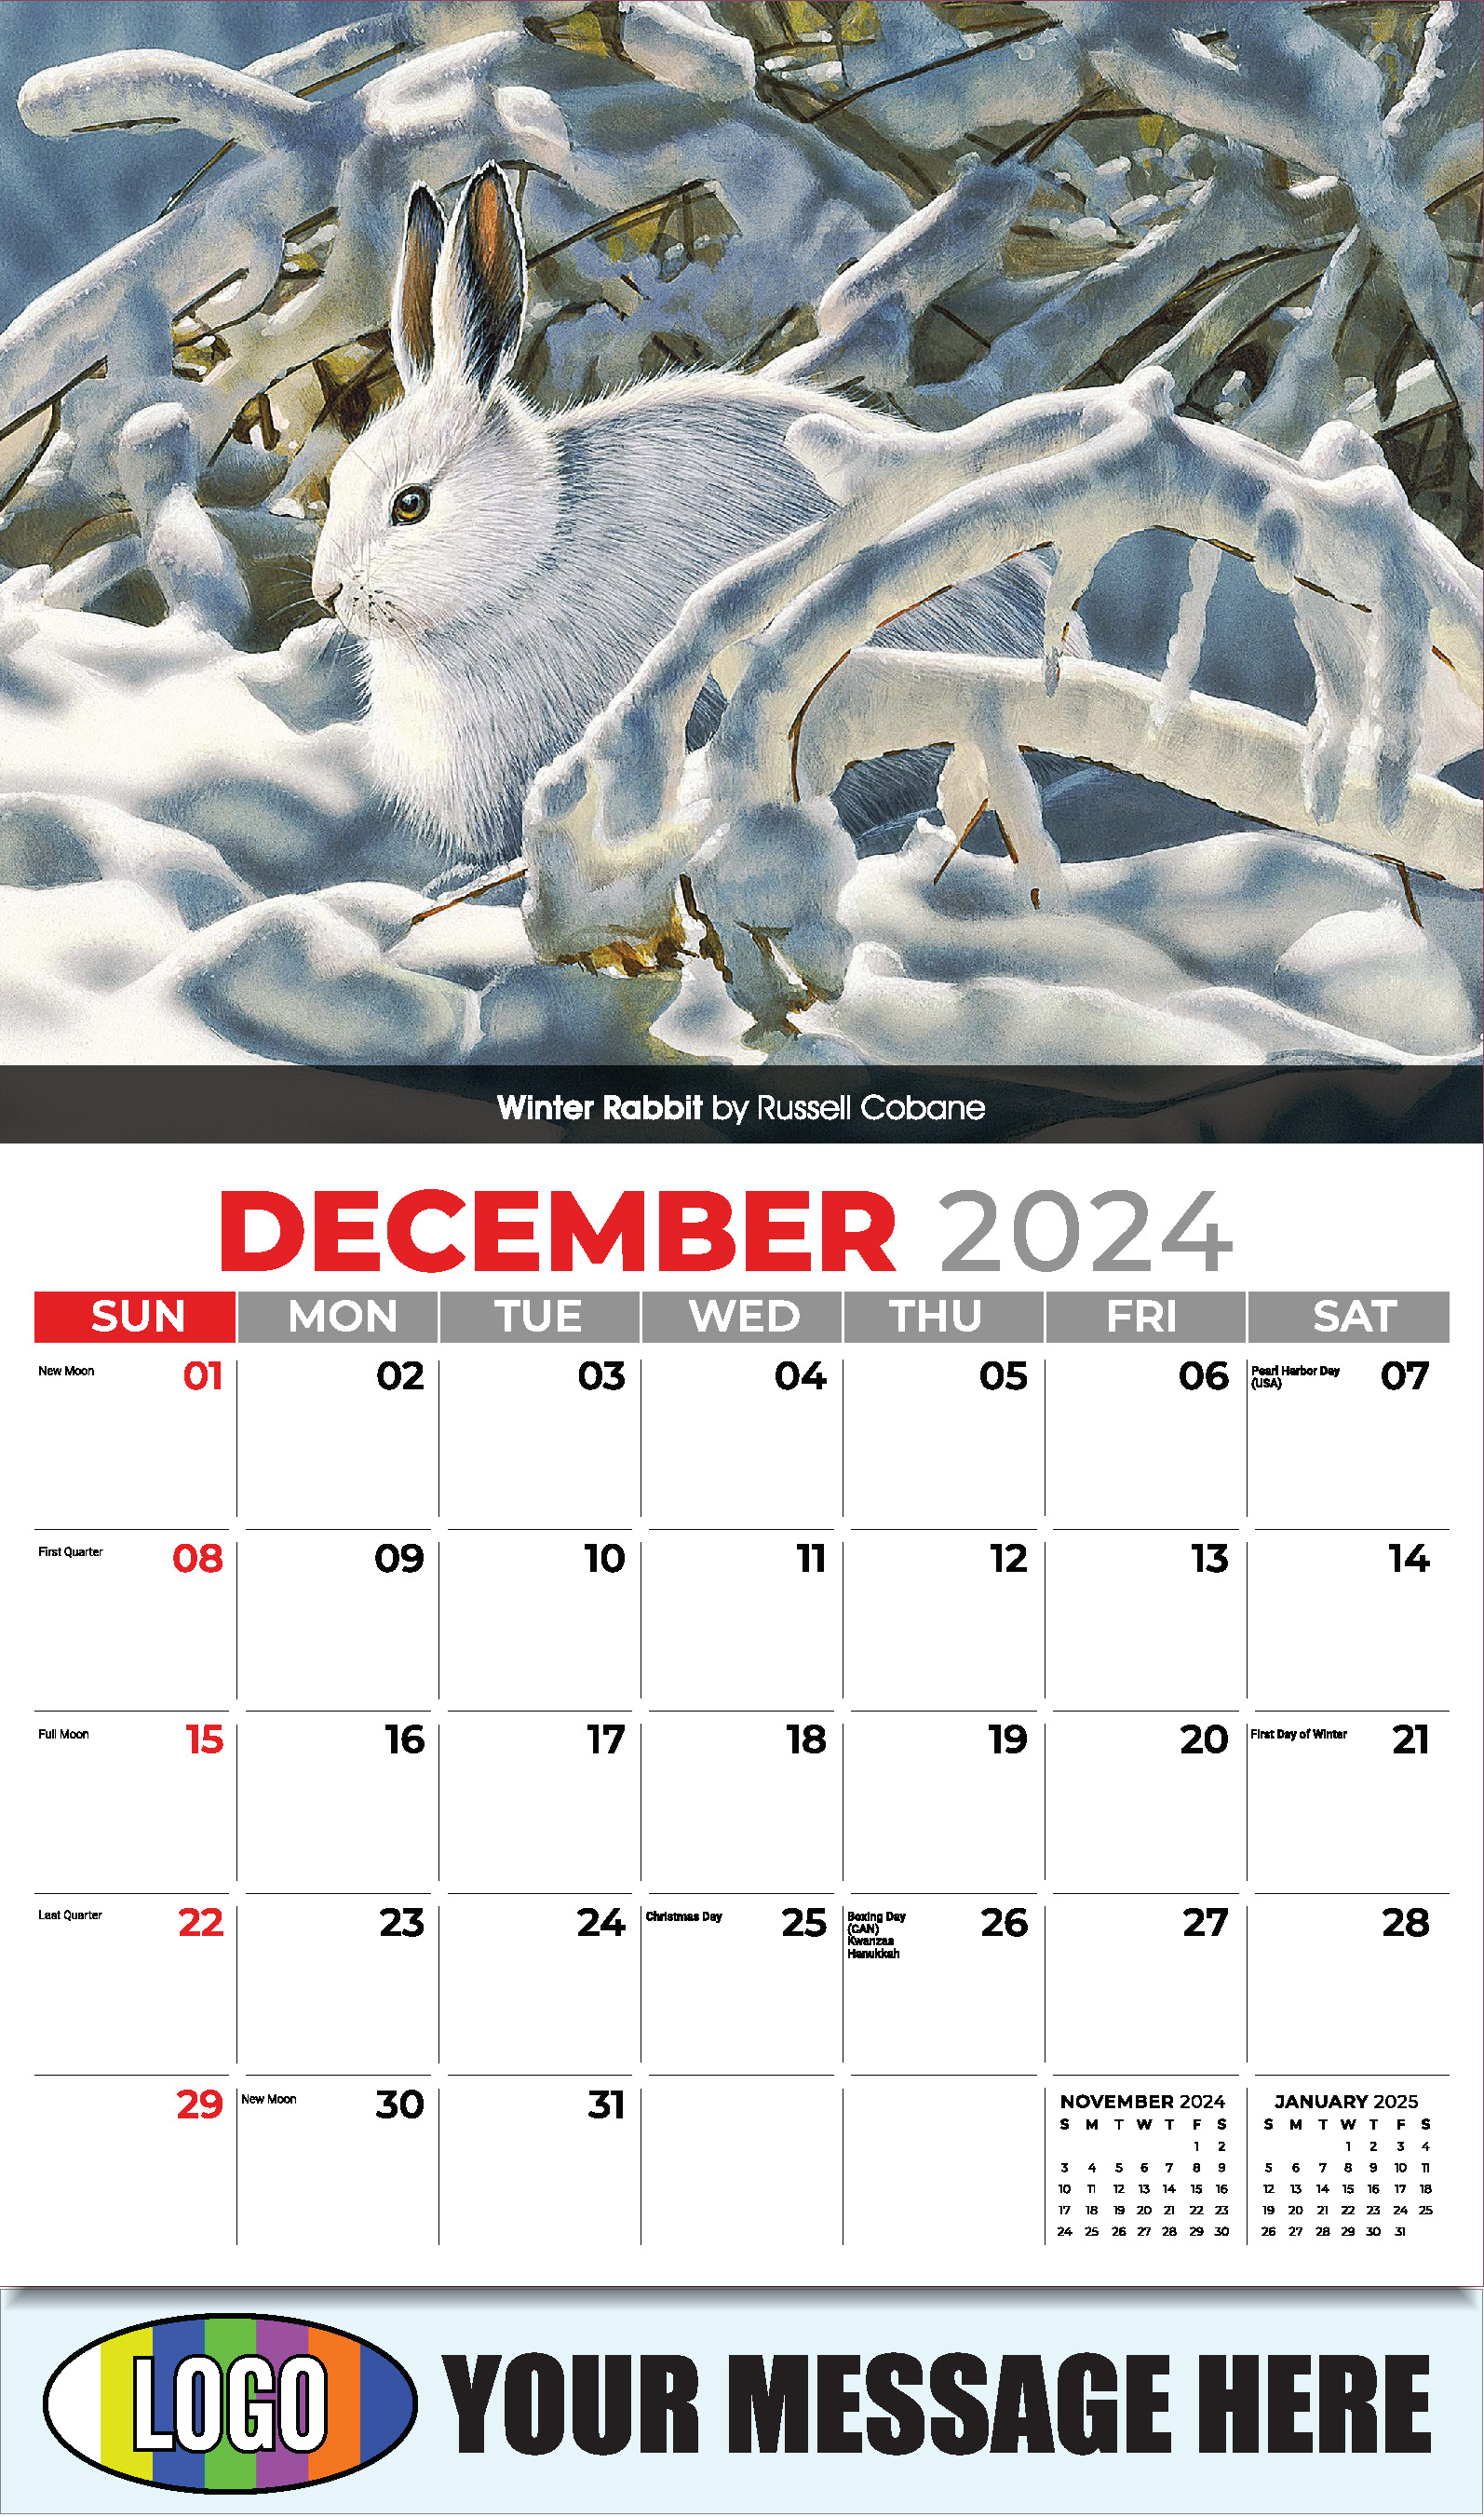 Wildlife Art Portraits 2025 Business Promotion Wall Calendar - December_a